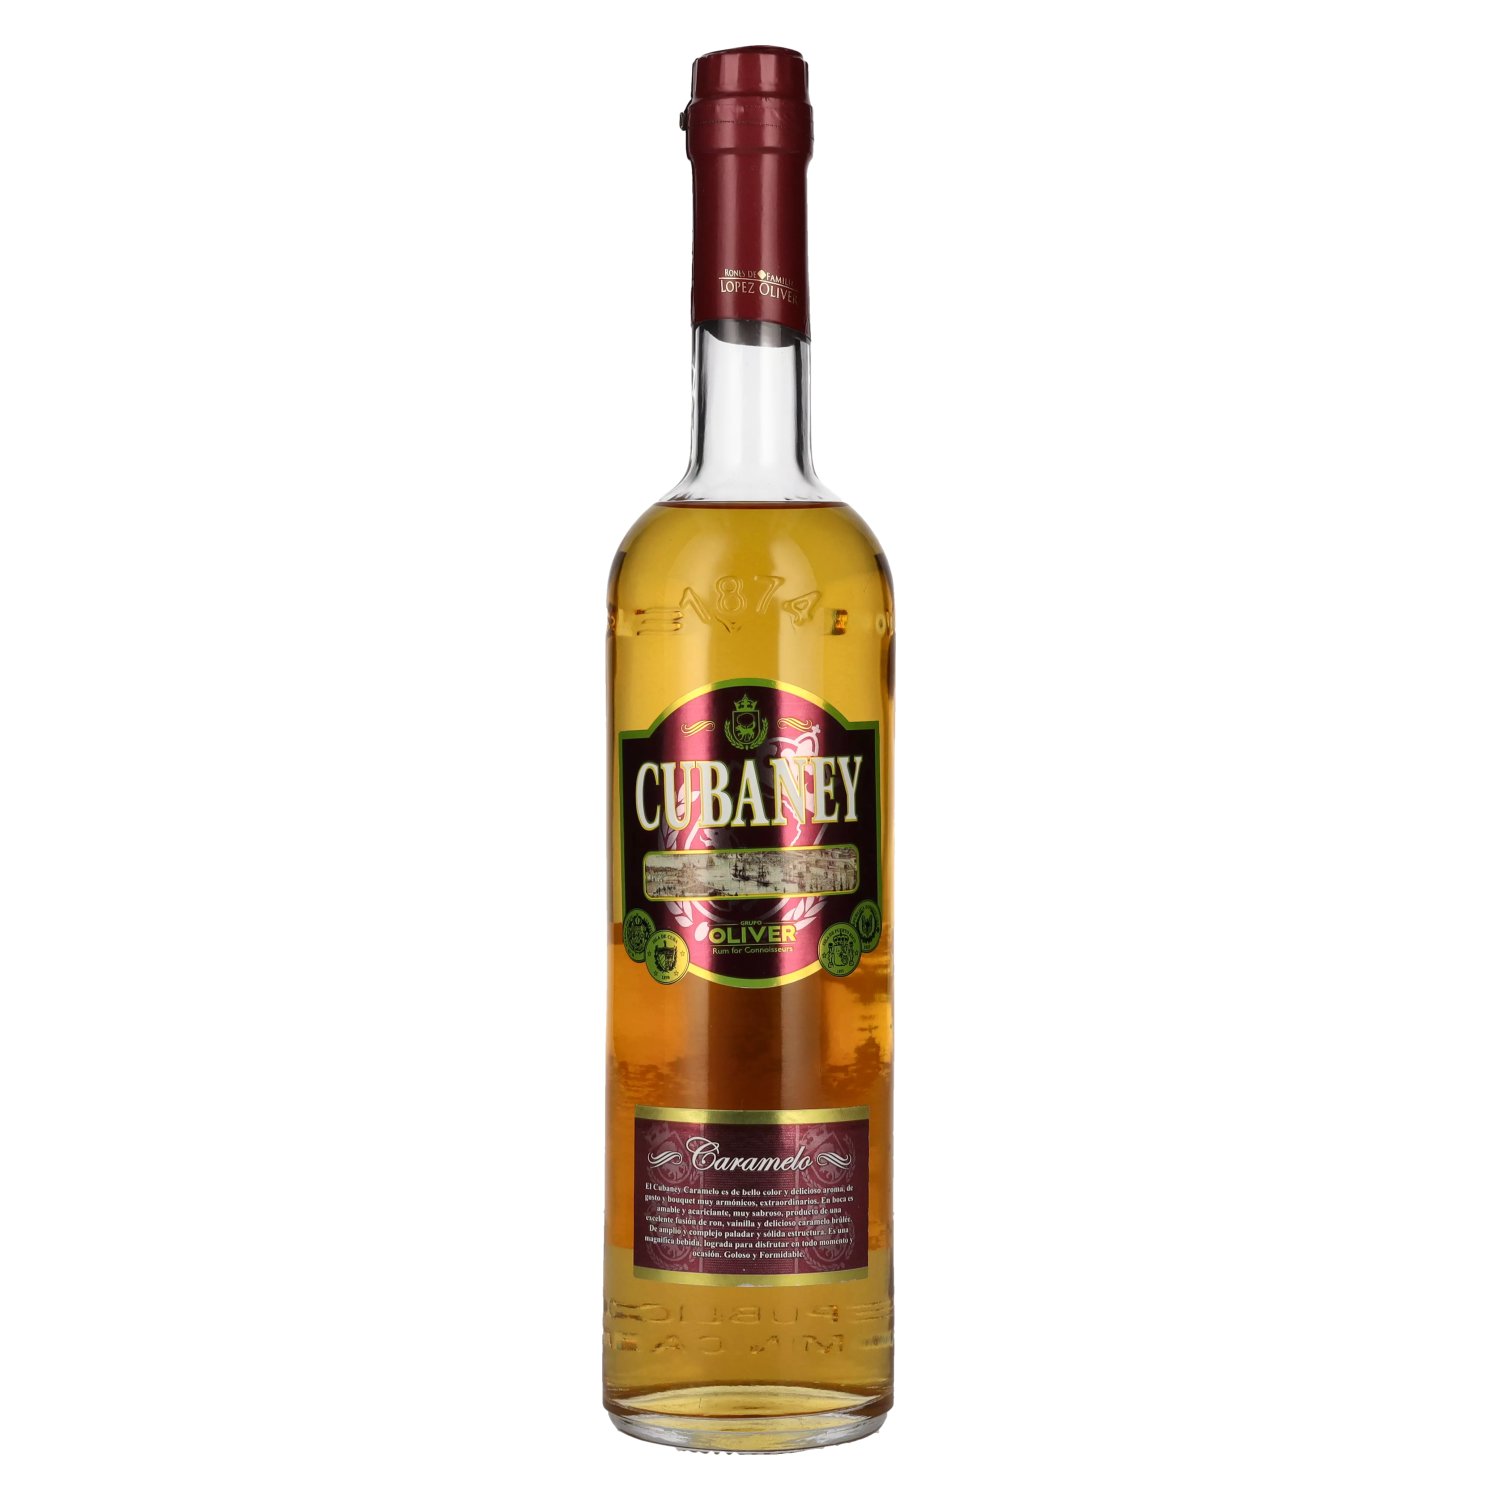 Cubaney Caramelo 30% Vol. Spirit - delicando Drink 0,7l